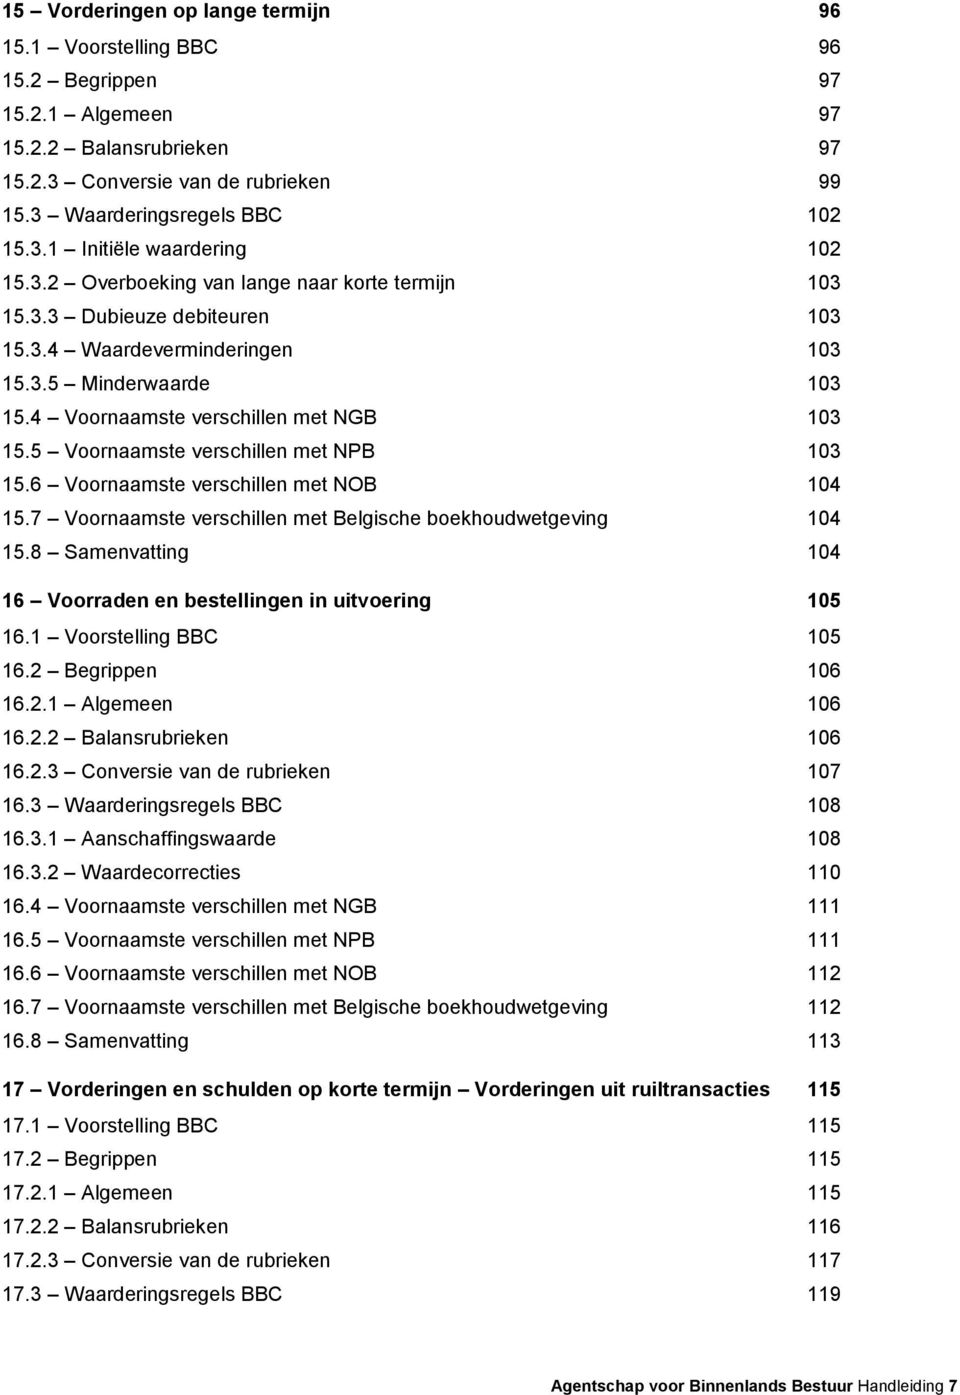 5 Voornaamste verschillen met NPB 103 15.6 Voornaamste verschillen met NOB 104 15.7 Voornaamste verschillen met Belgische boekhoudwetgeving 104 15.